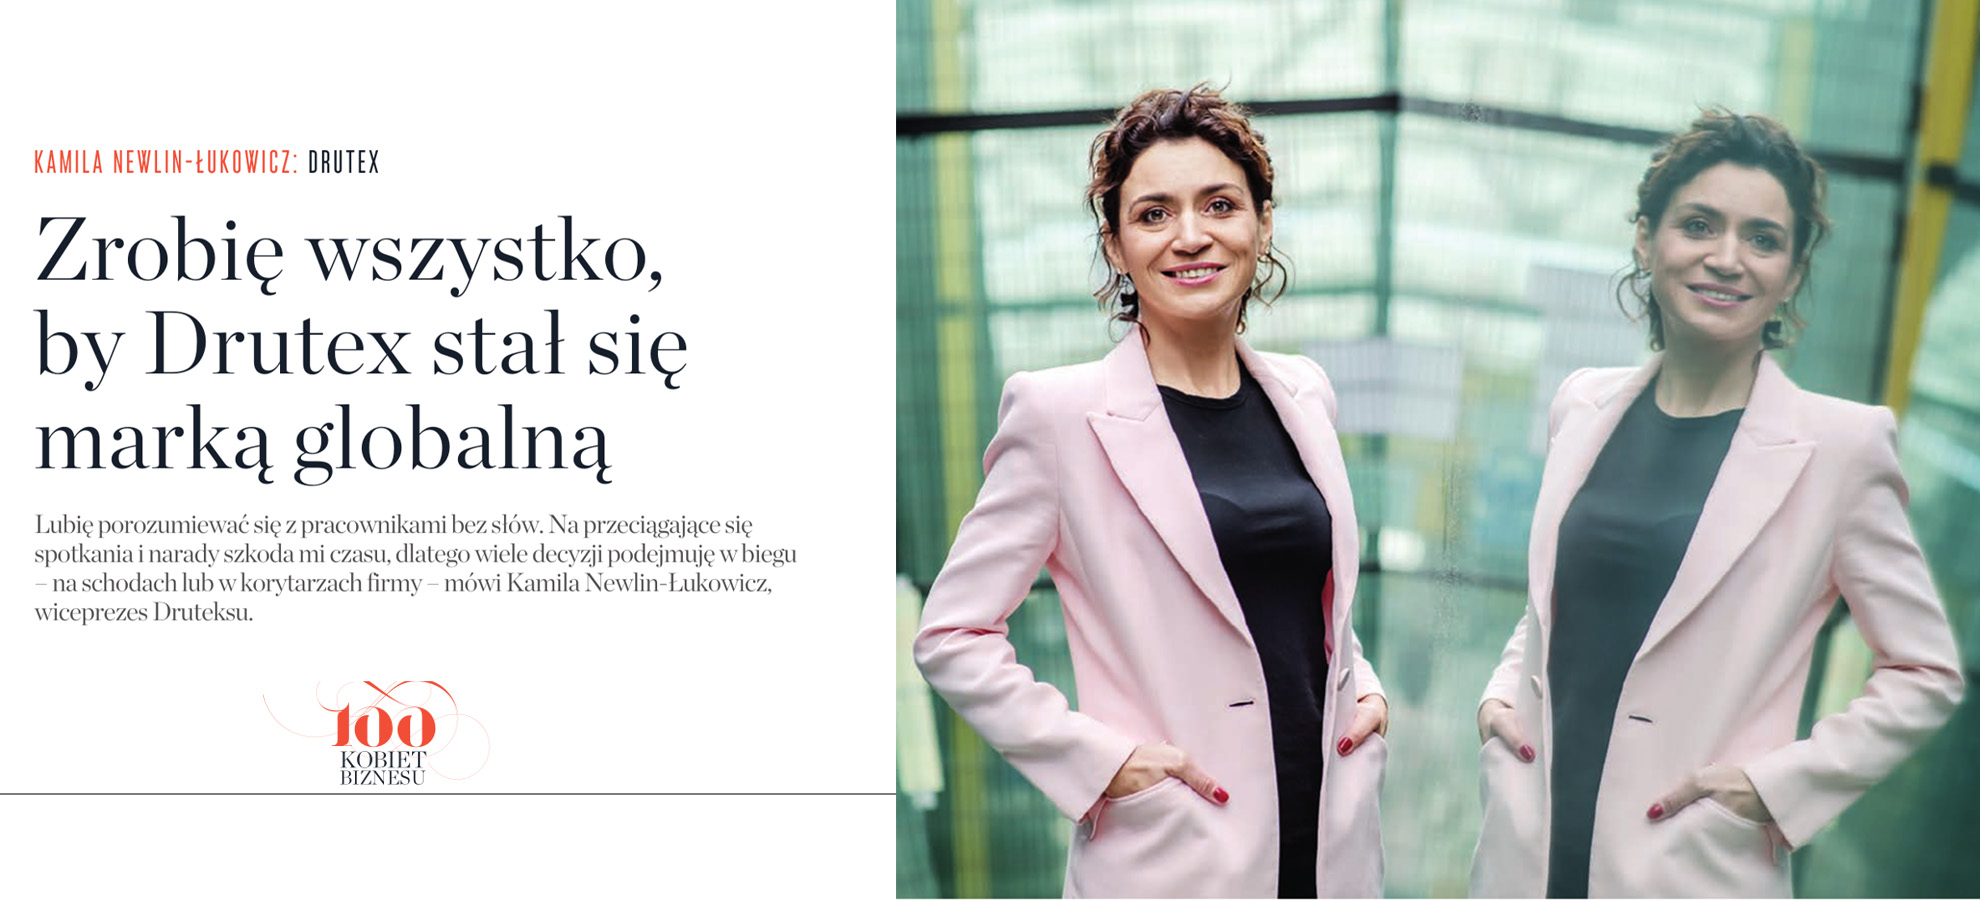 Kamila Newlin-Łukowicz „ The Businesswoman of the Year 2021”